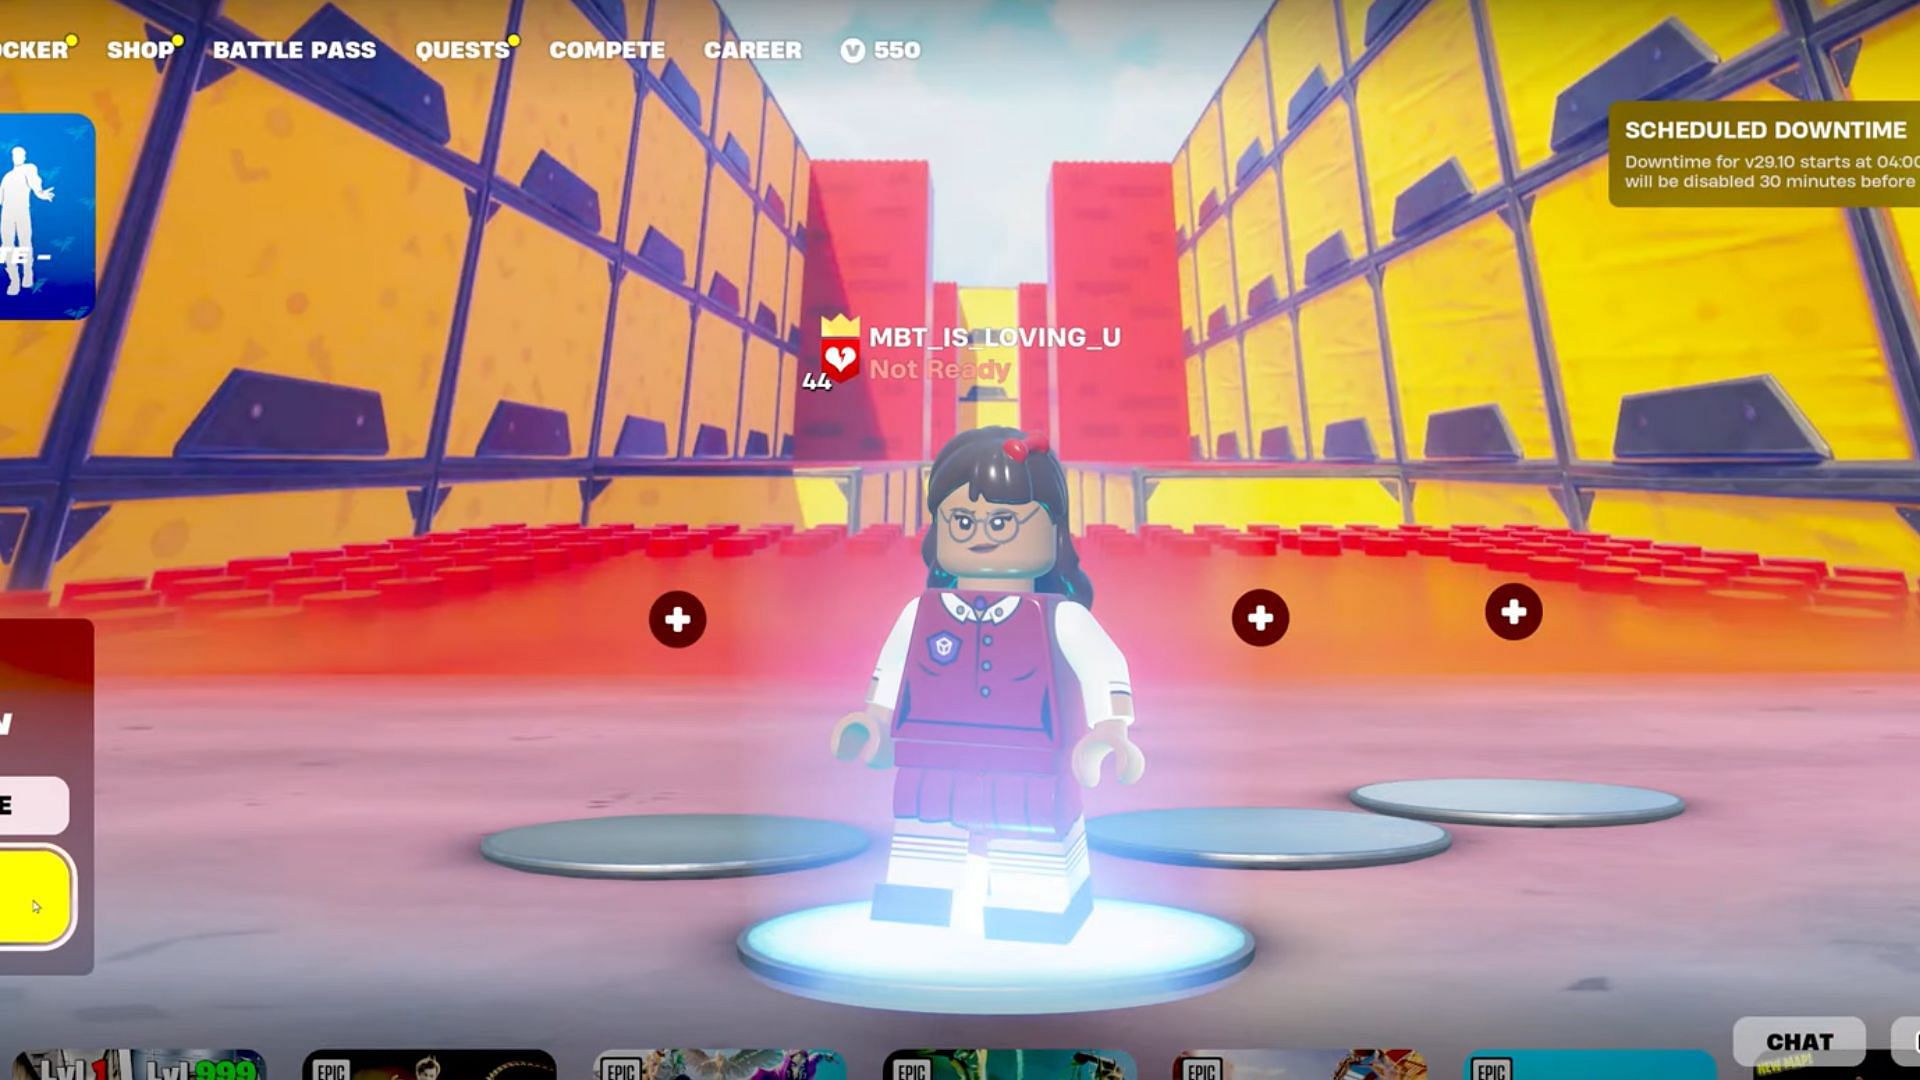 The lobby for the LEGO Brick Deathrun (Image via MBT on YouTube)